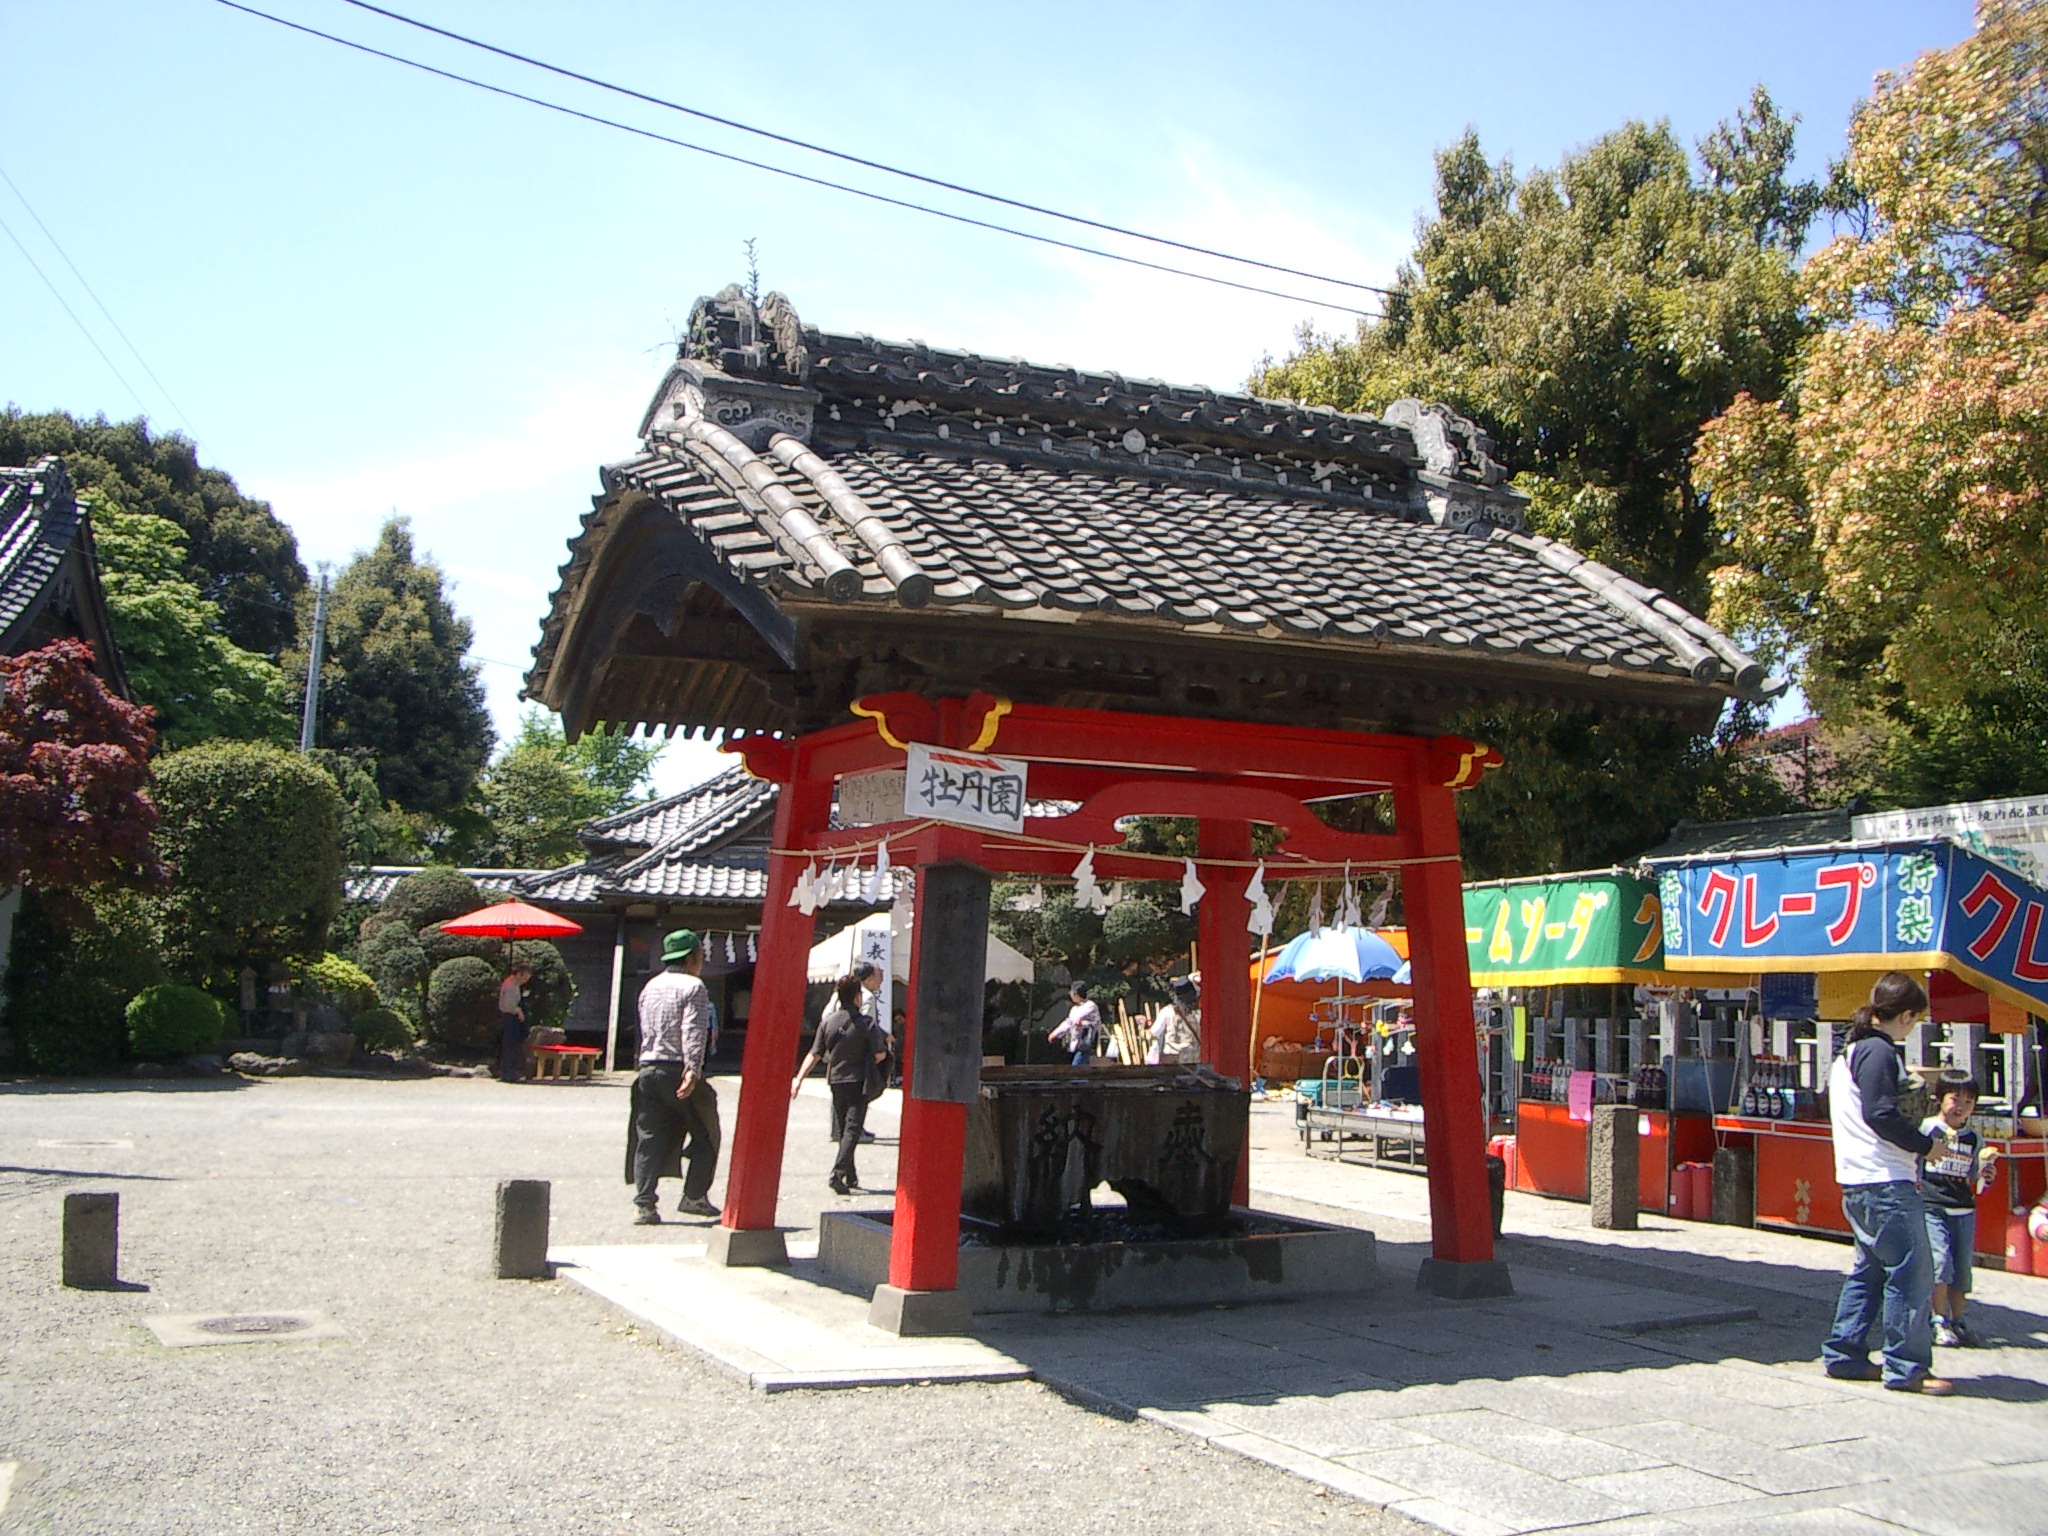 箭弓 やきゅう 稲荷神社の牡丹園 ぷー助ののんびりスローライフ